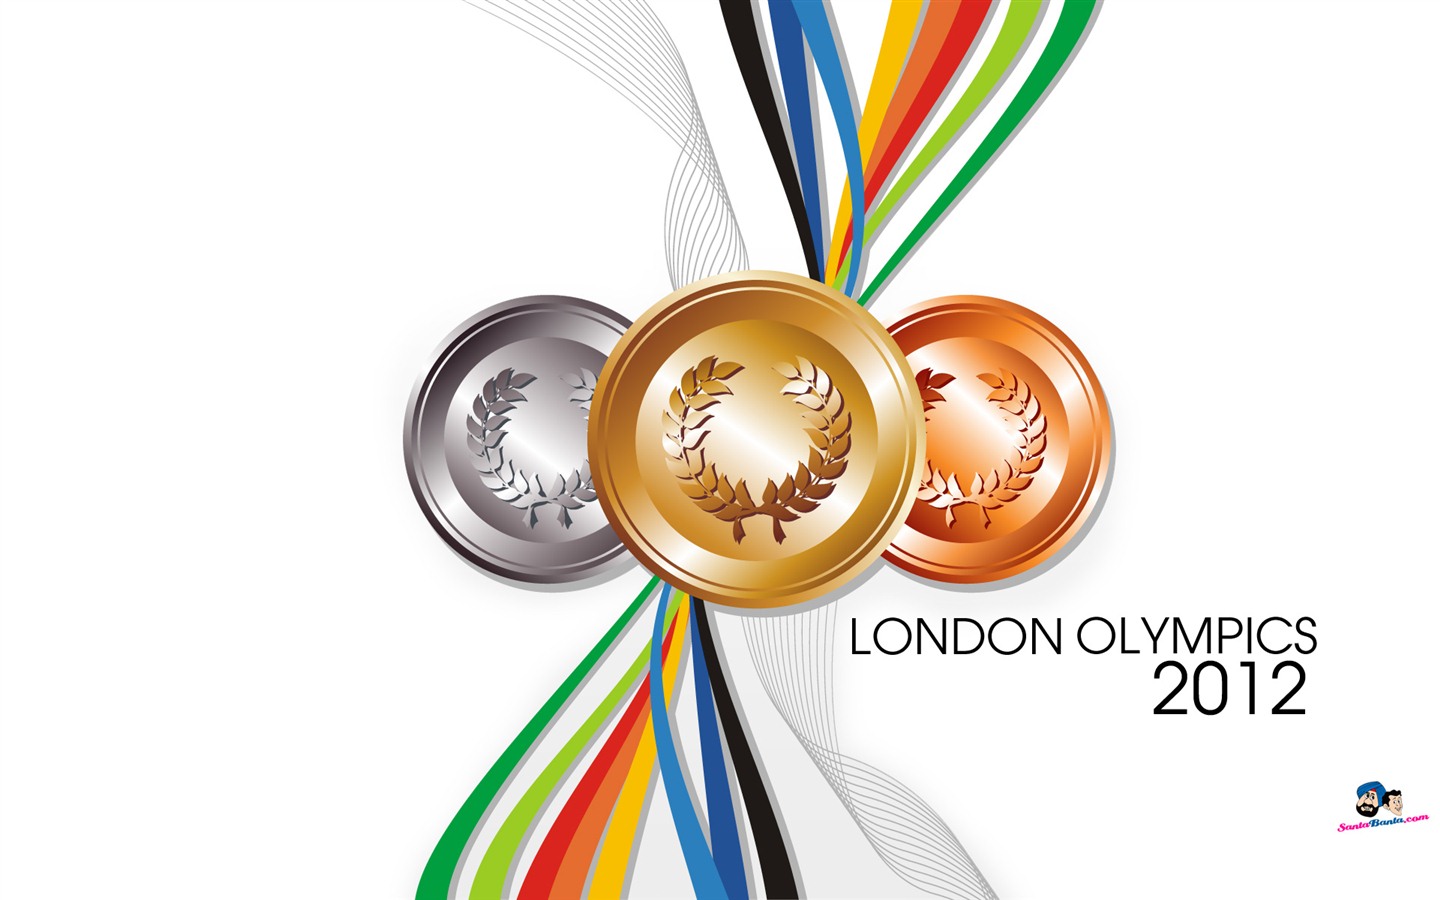 Londres 2012 Olimpiadas fondos temáticos (2) #12 - 1440x900